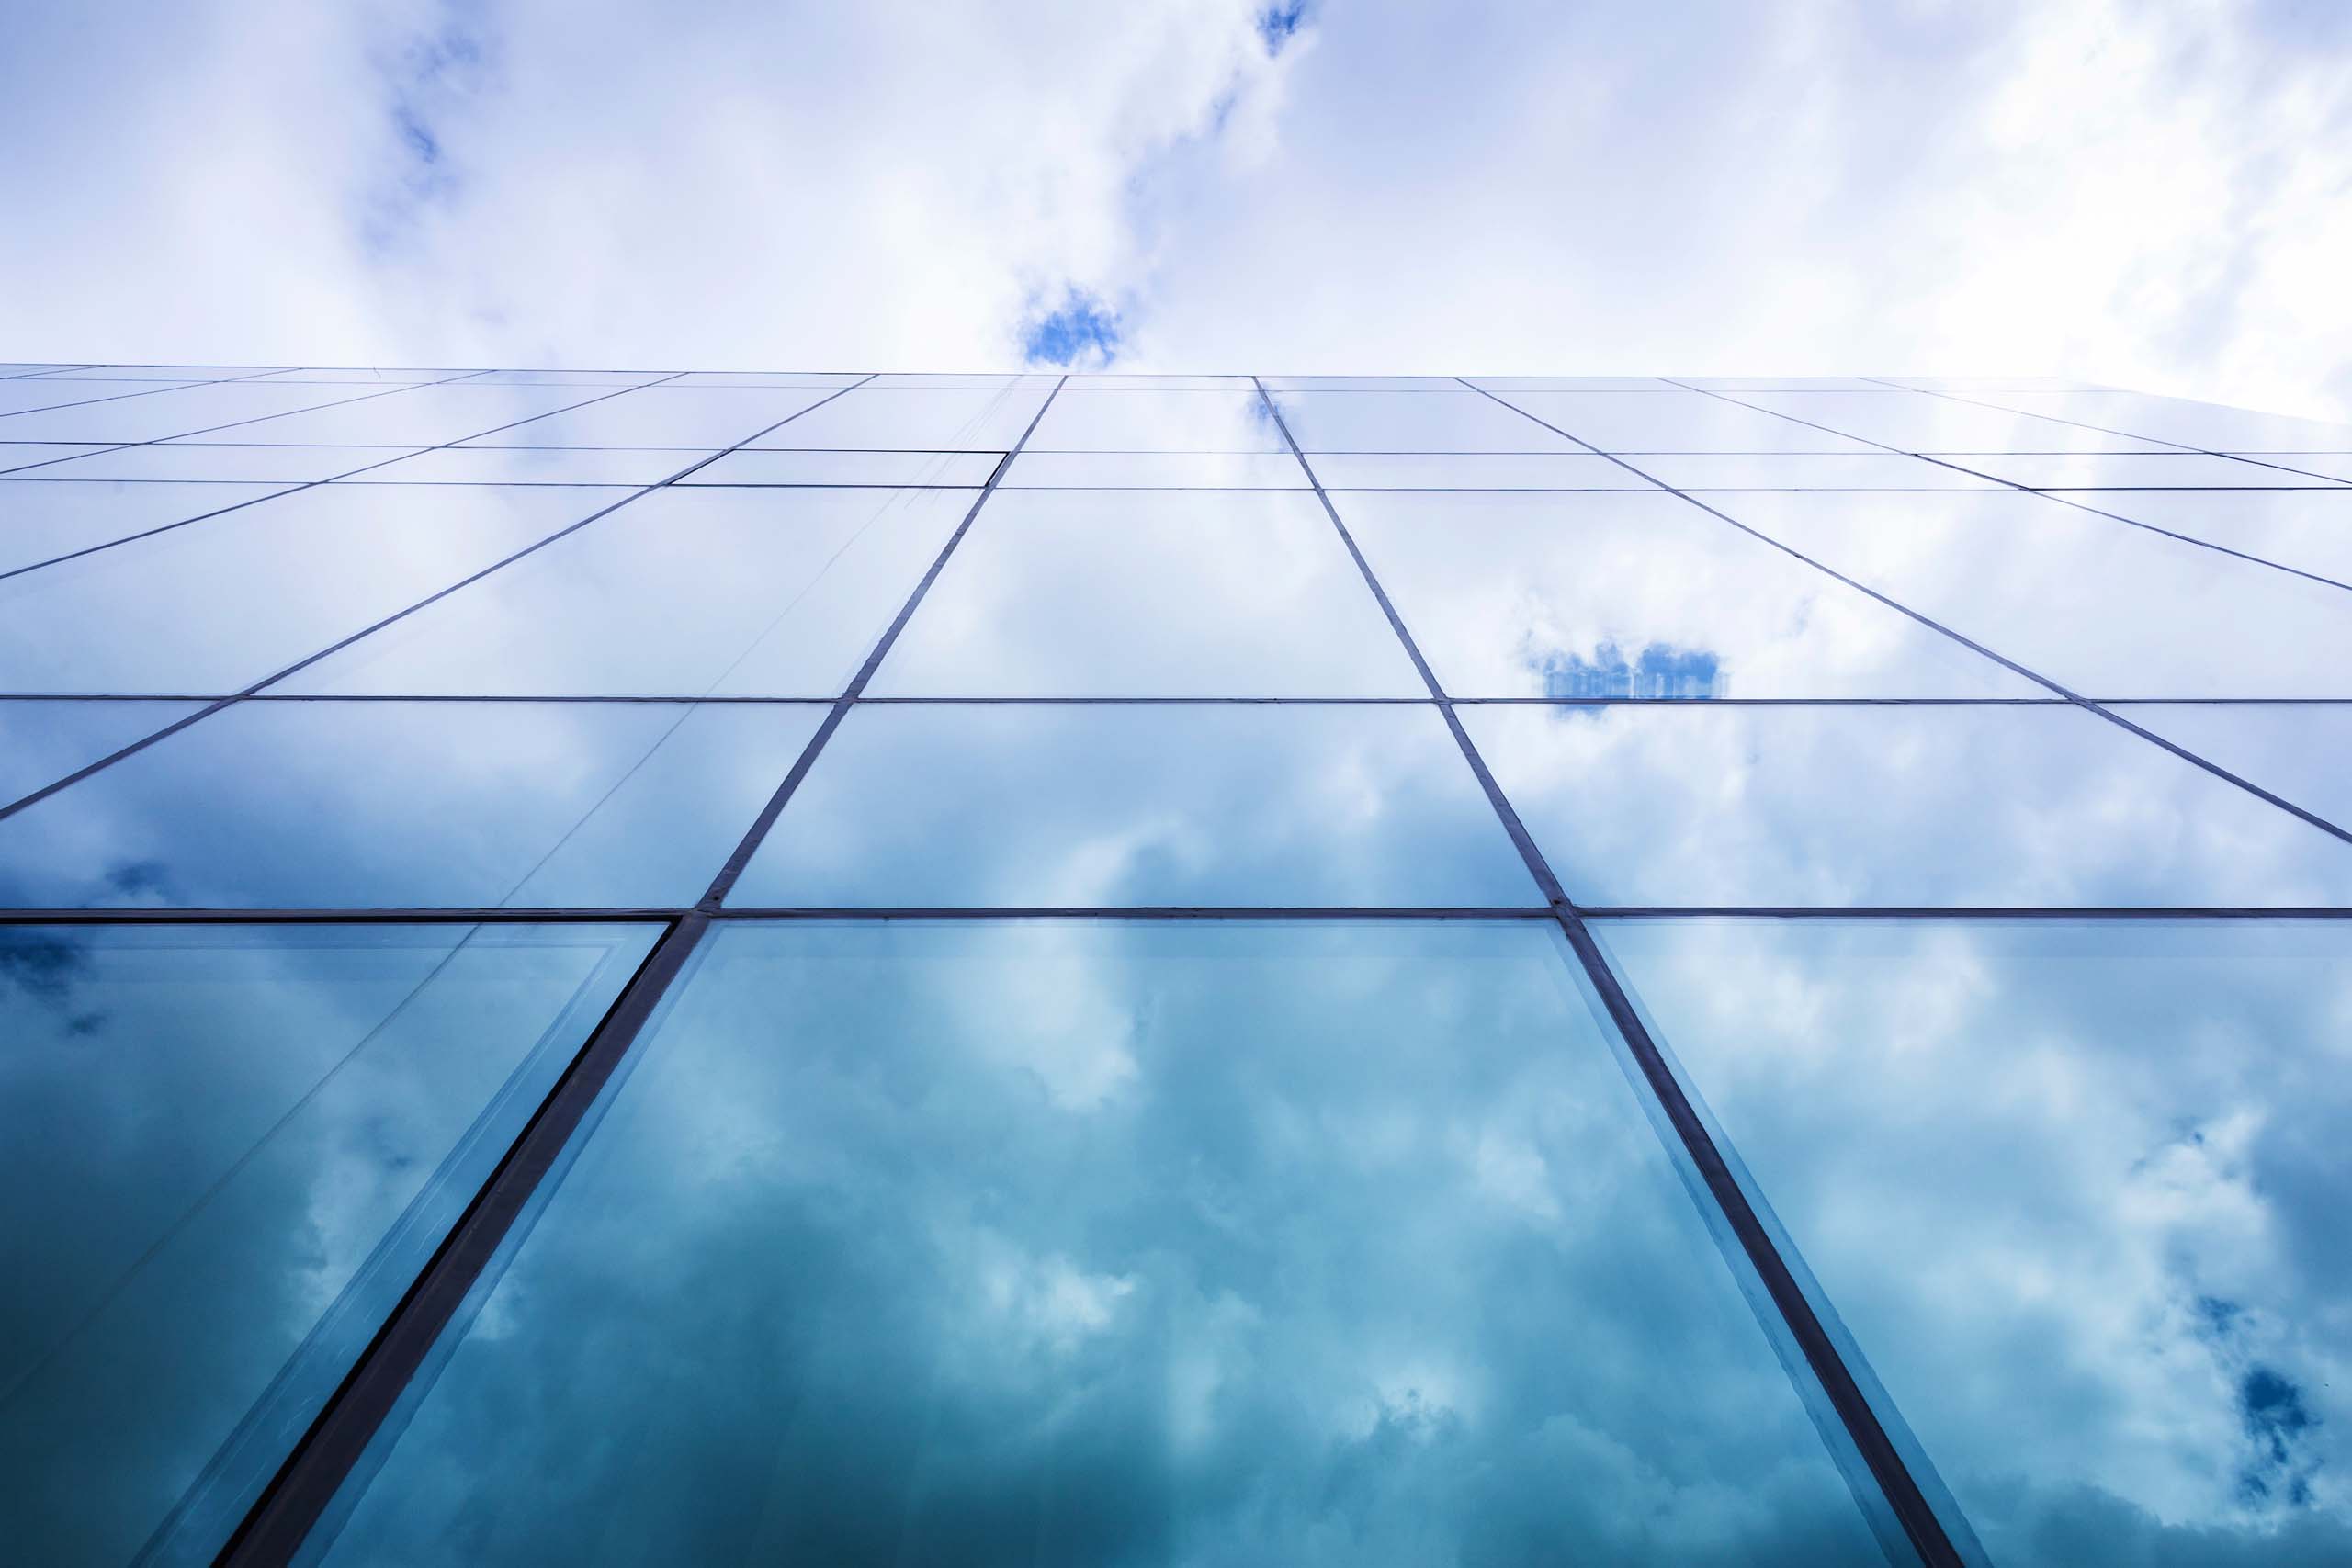 Clouds reflected in glass skyscraper